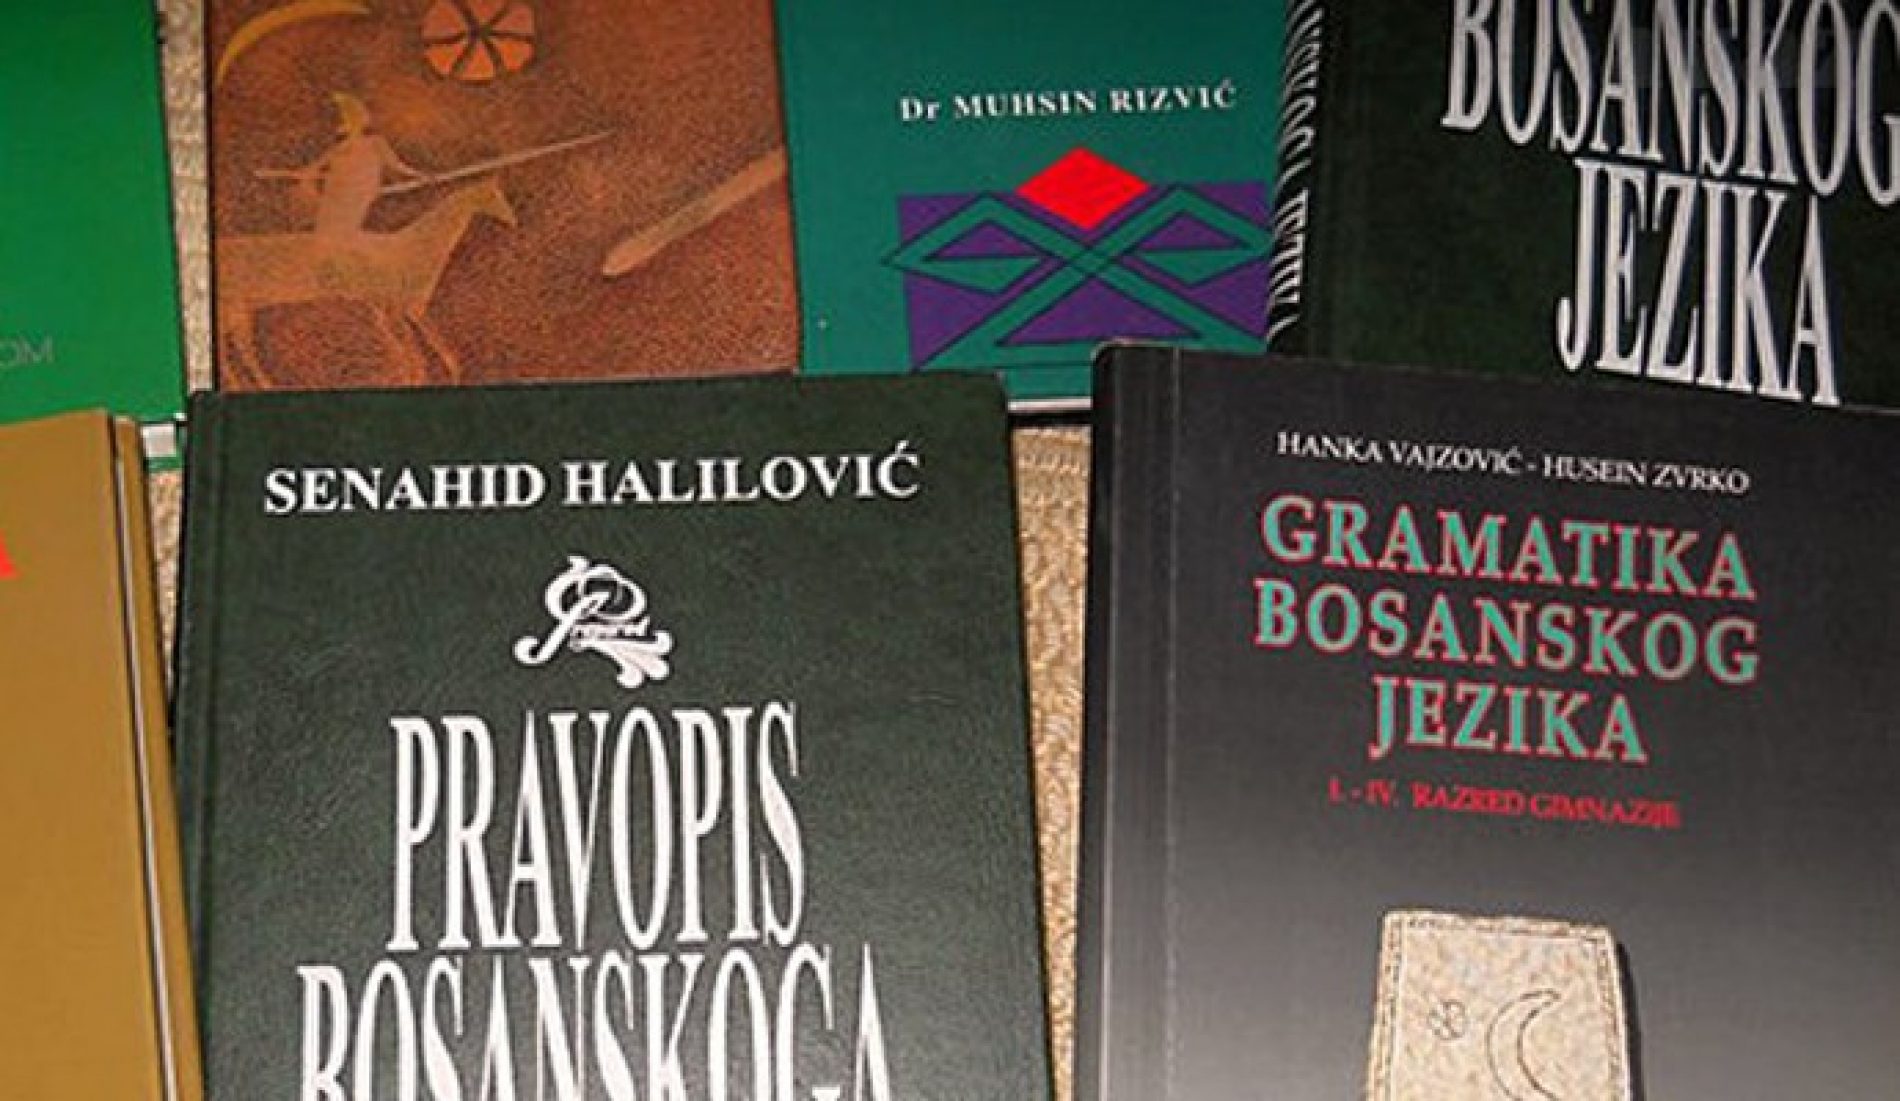 Saopćenje BZK „Preporod“: Status bosanskog jezika u obrazovnom sistemu u KS